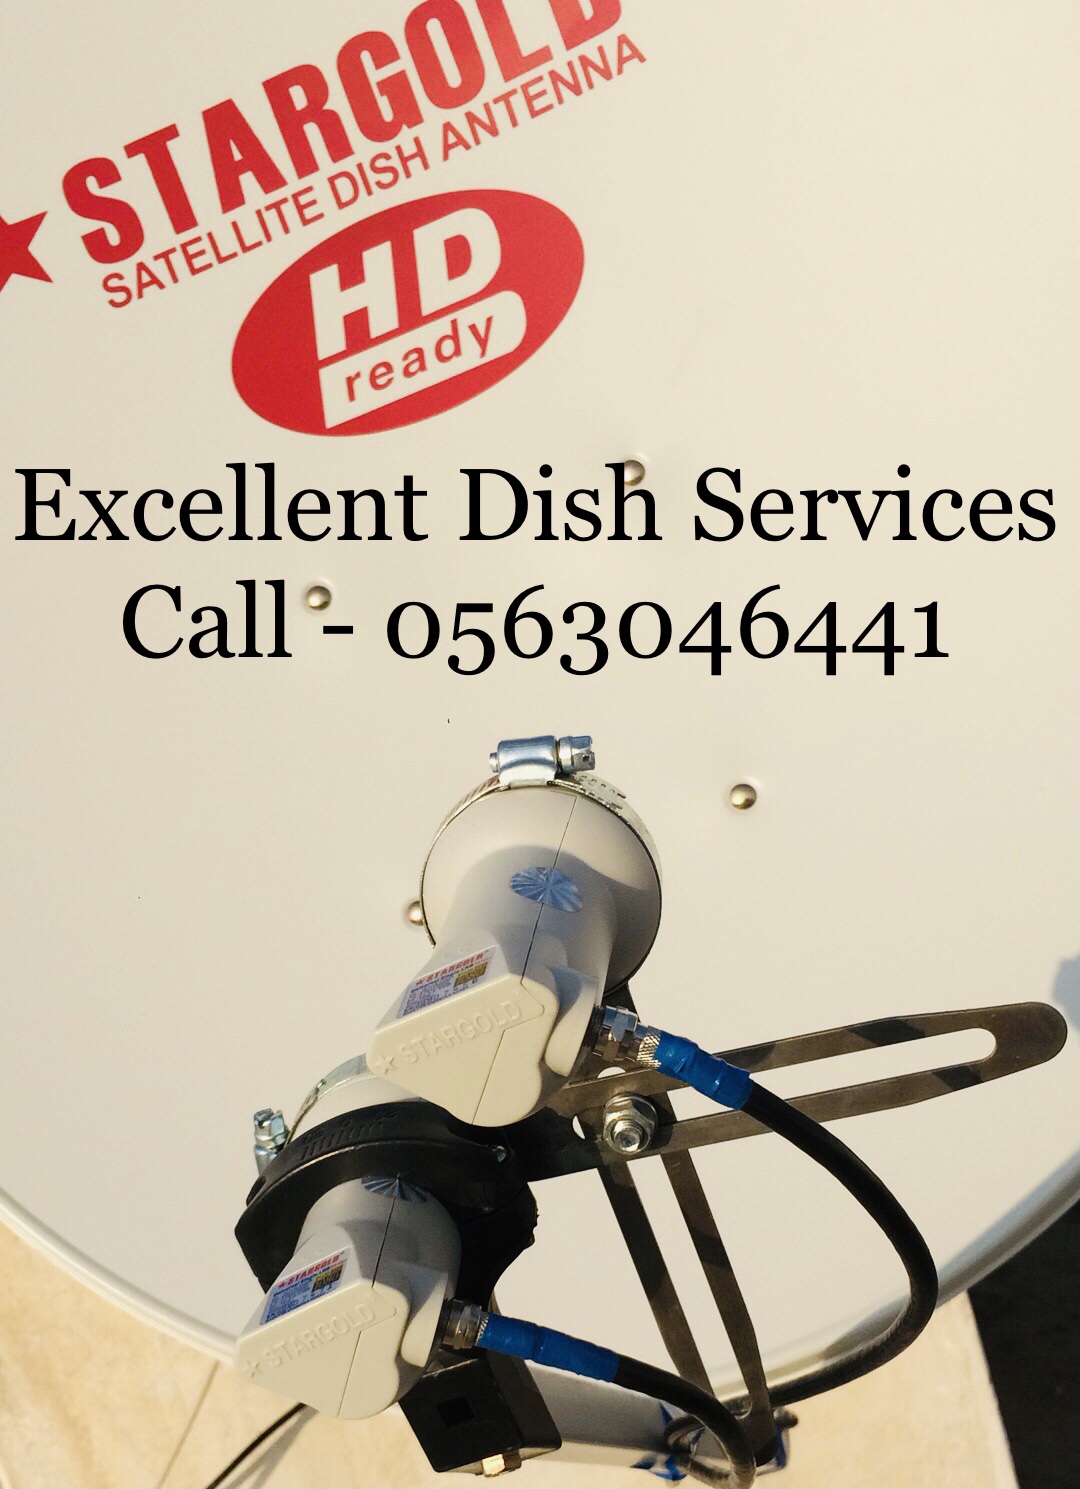 Satellite Iptv Channels Airtel Dish Installation In Jumirah 0563046441